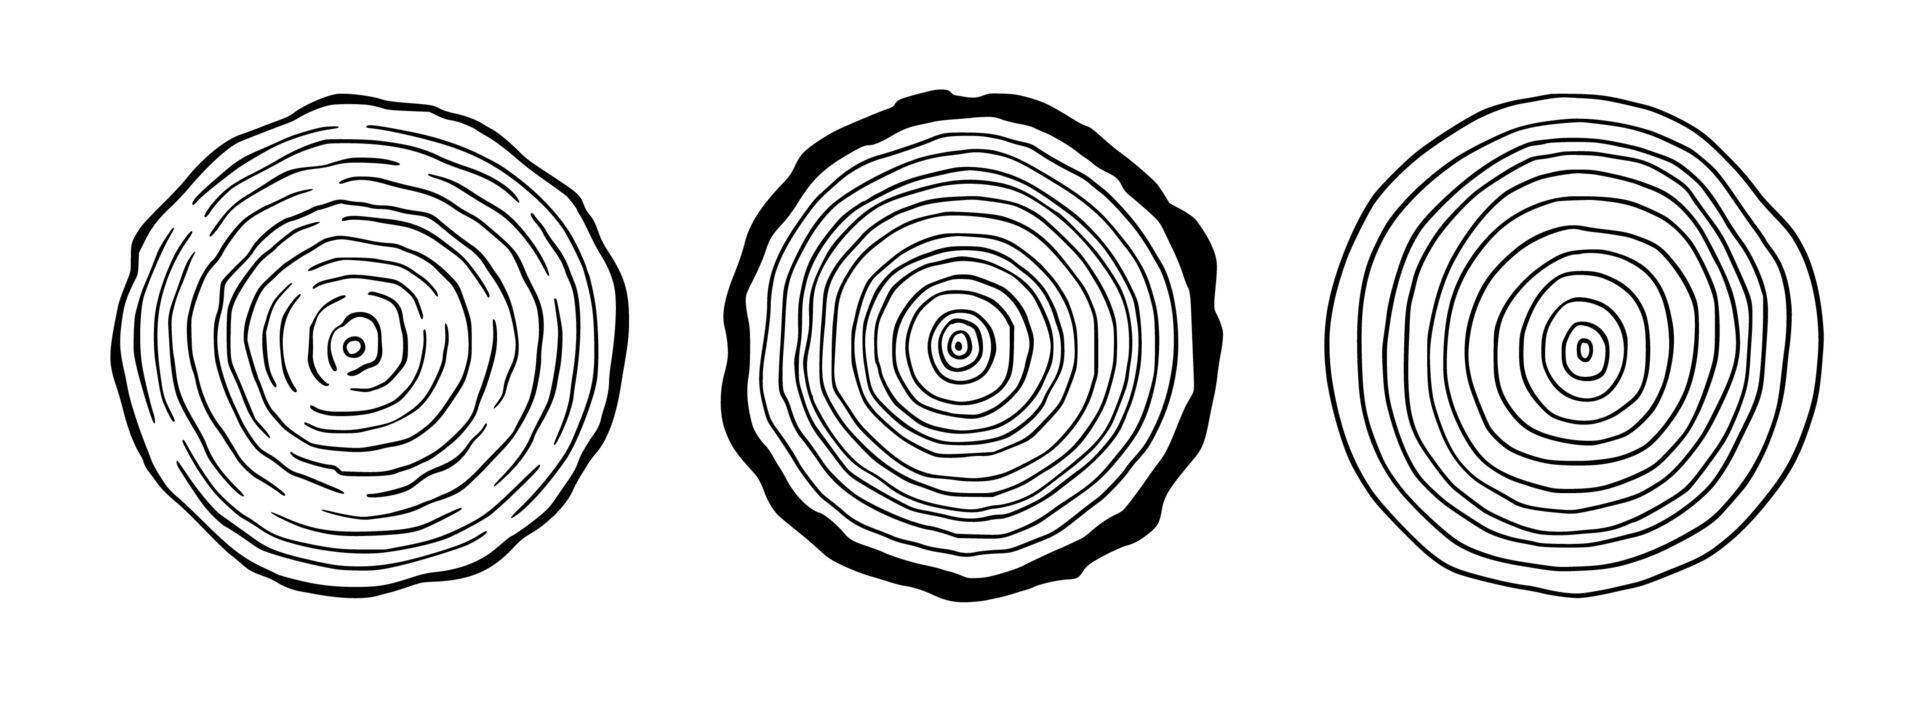 árvore anel madeira círculo definir. mão desenhado árvore anel padrão, linha ondulação círculo madeira textura. madeira orgânico fatia linha Projeto. vetor